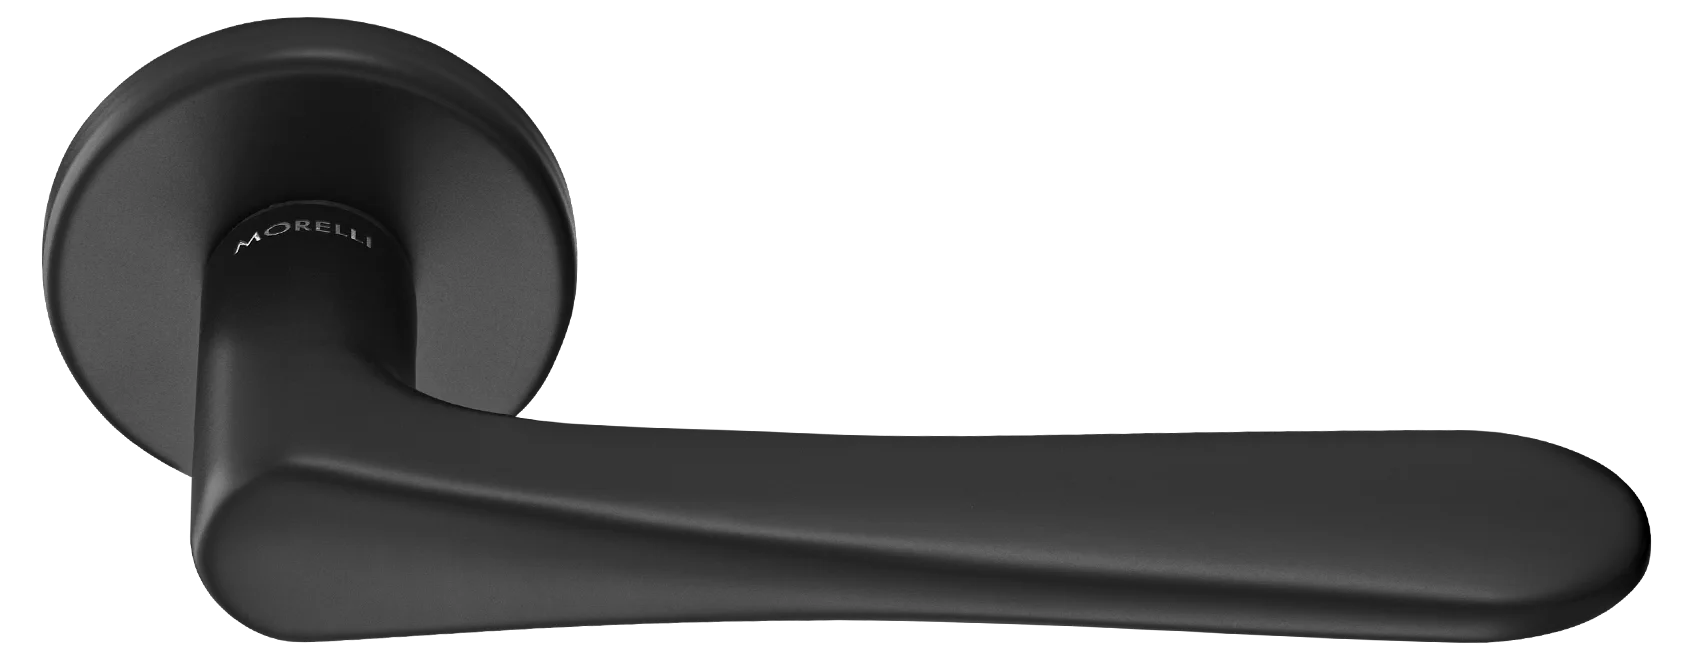 AULA R5 NERO, ручка дверная на розетке 7мм, цвет -  черный фото купить Пермь